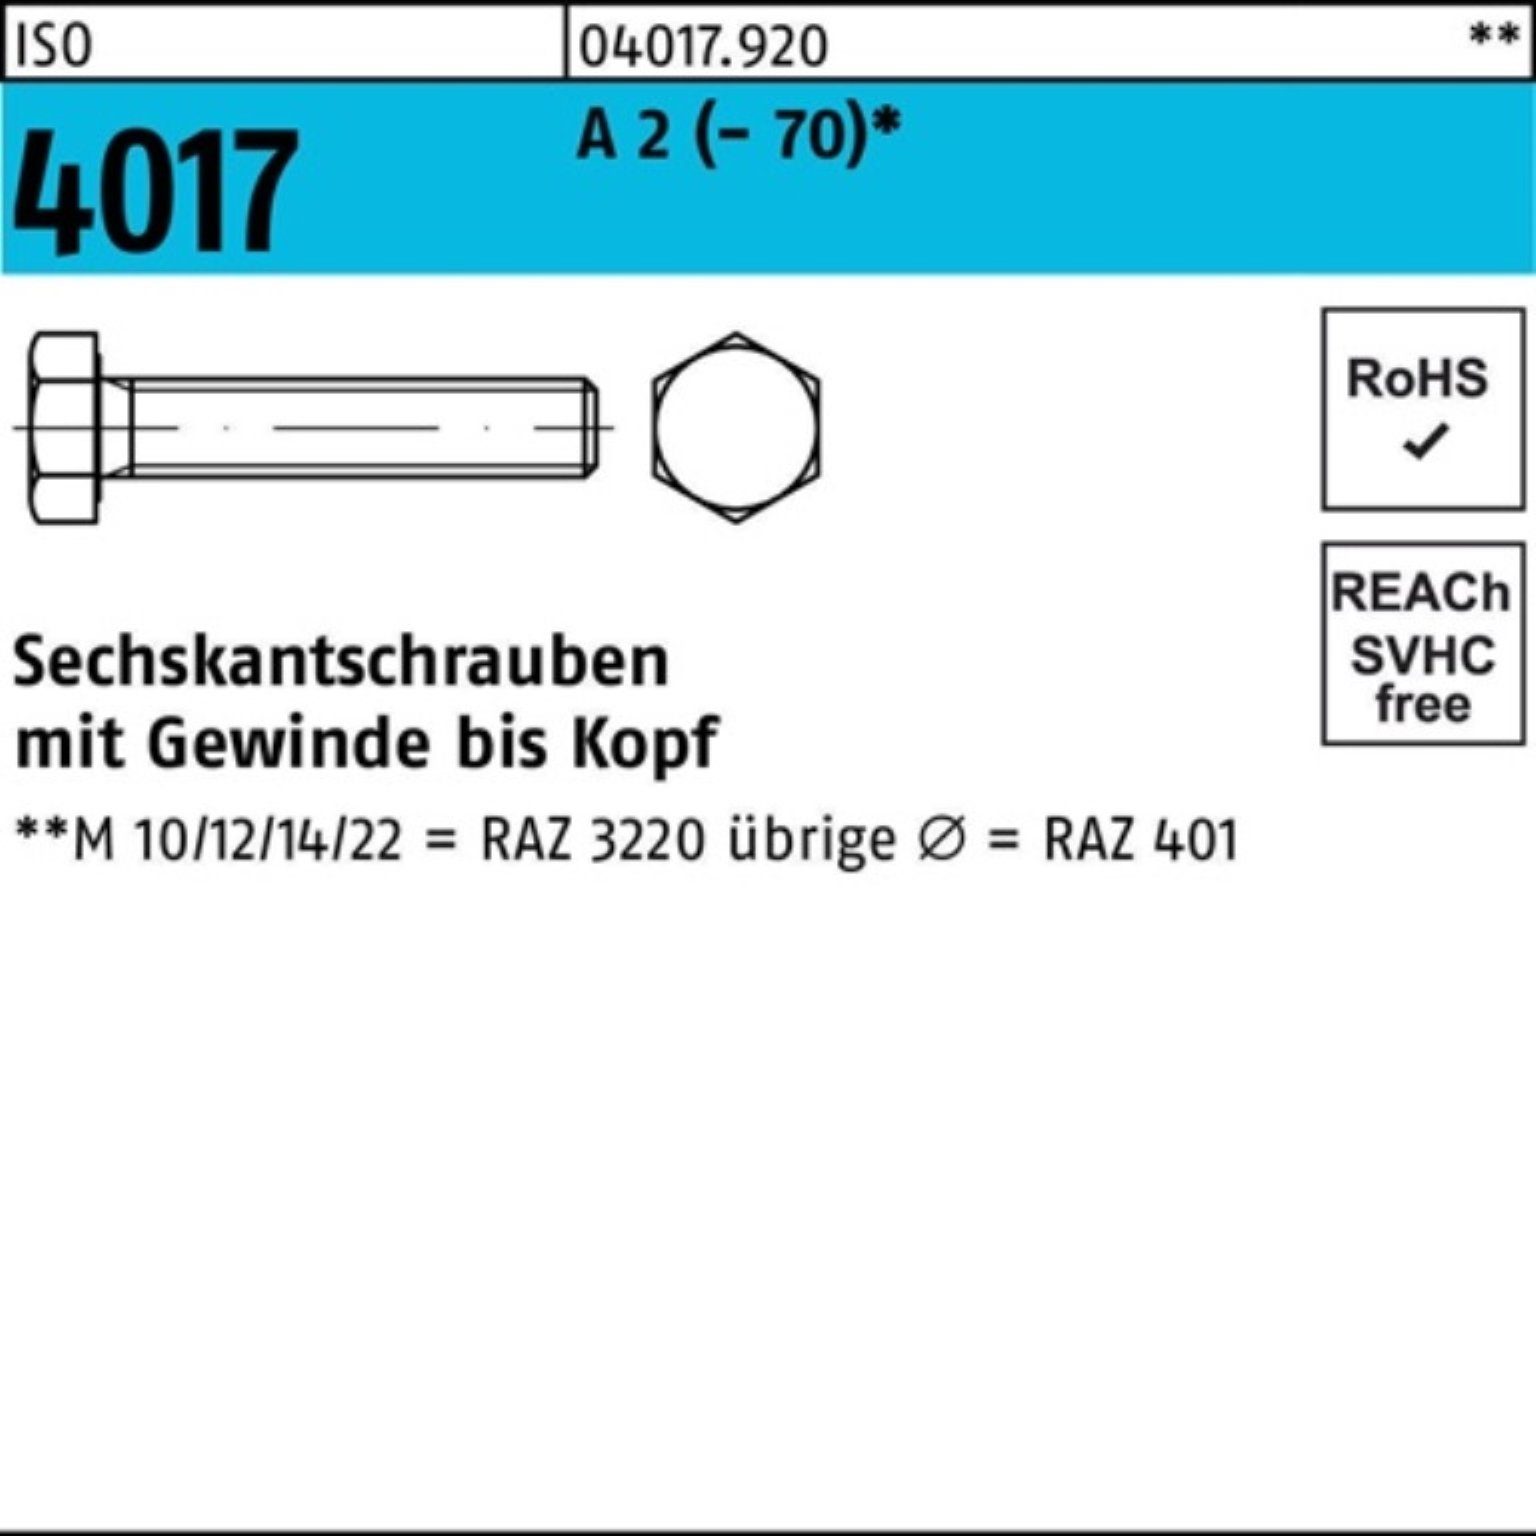 2 ISO Bufab Sechskantschraube A 4017 Sechskantschraube 10 Pack M20x 100er (70) VG 120 Stück